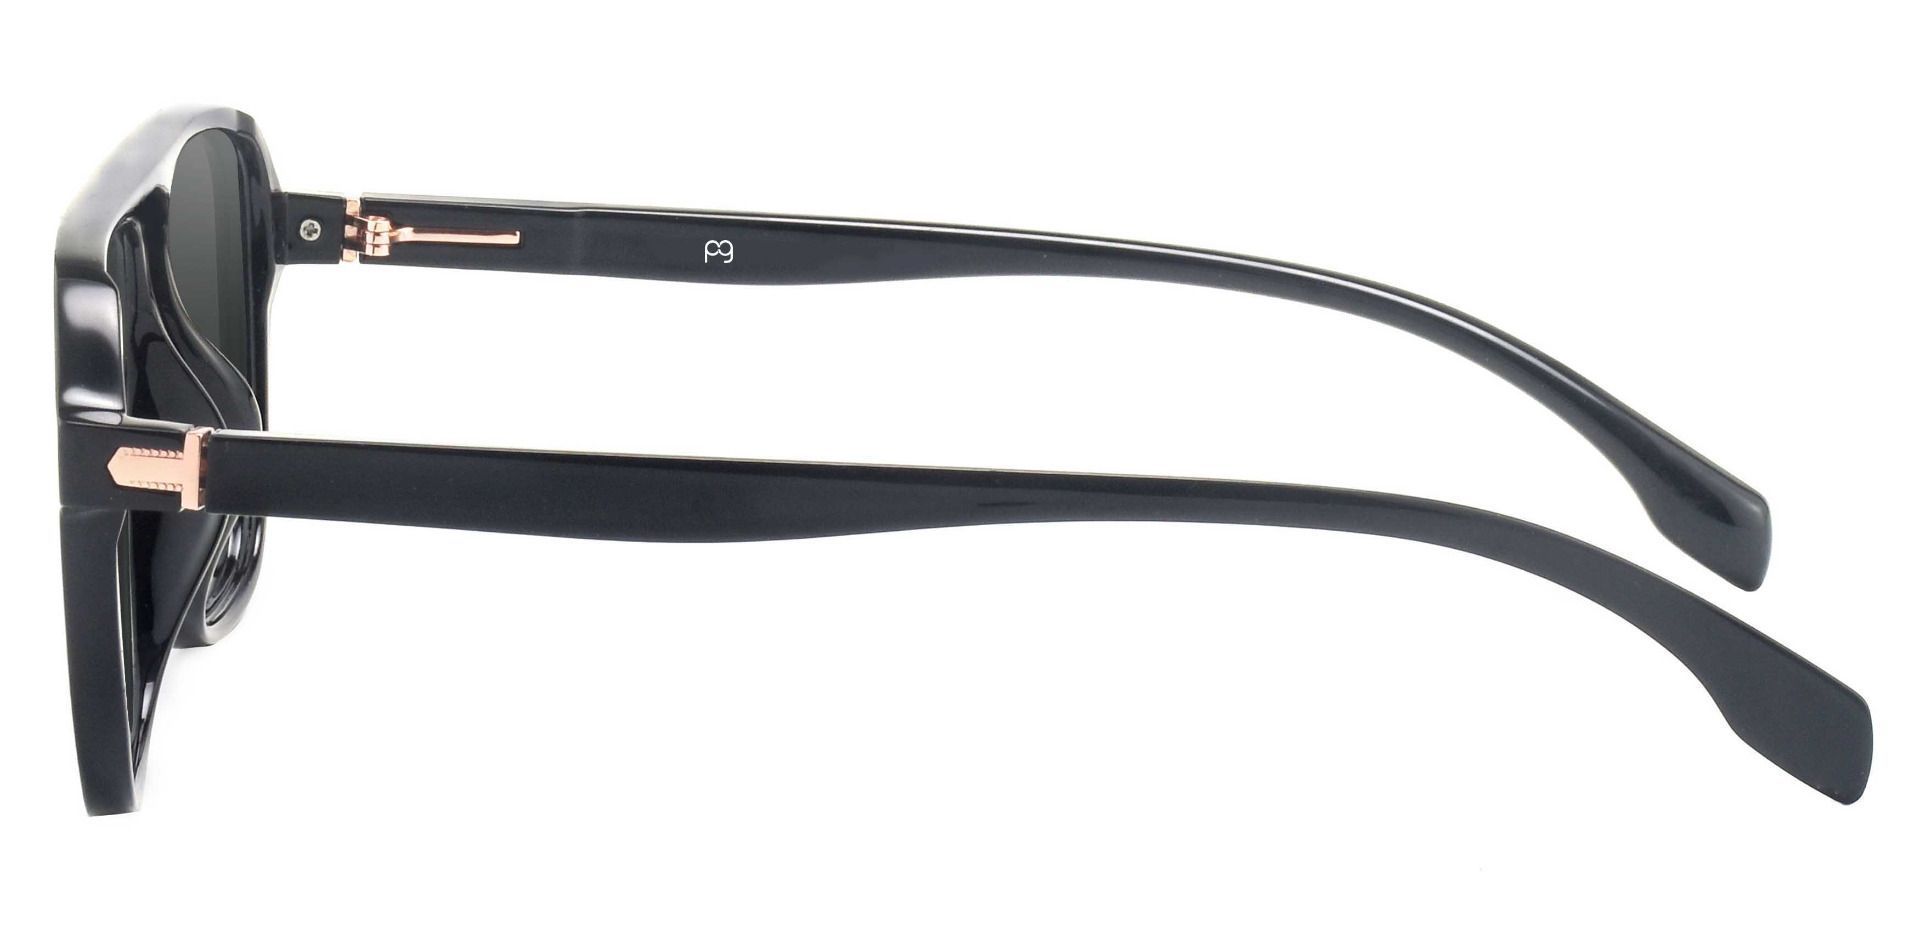 Gideon Aviator Progressive Sunglasses - Black Frame With Gray Lenses